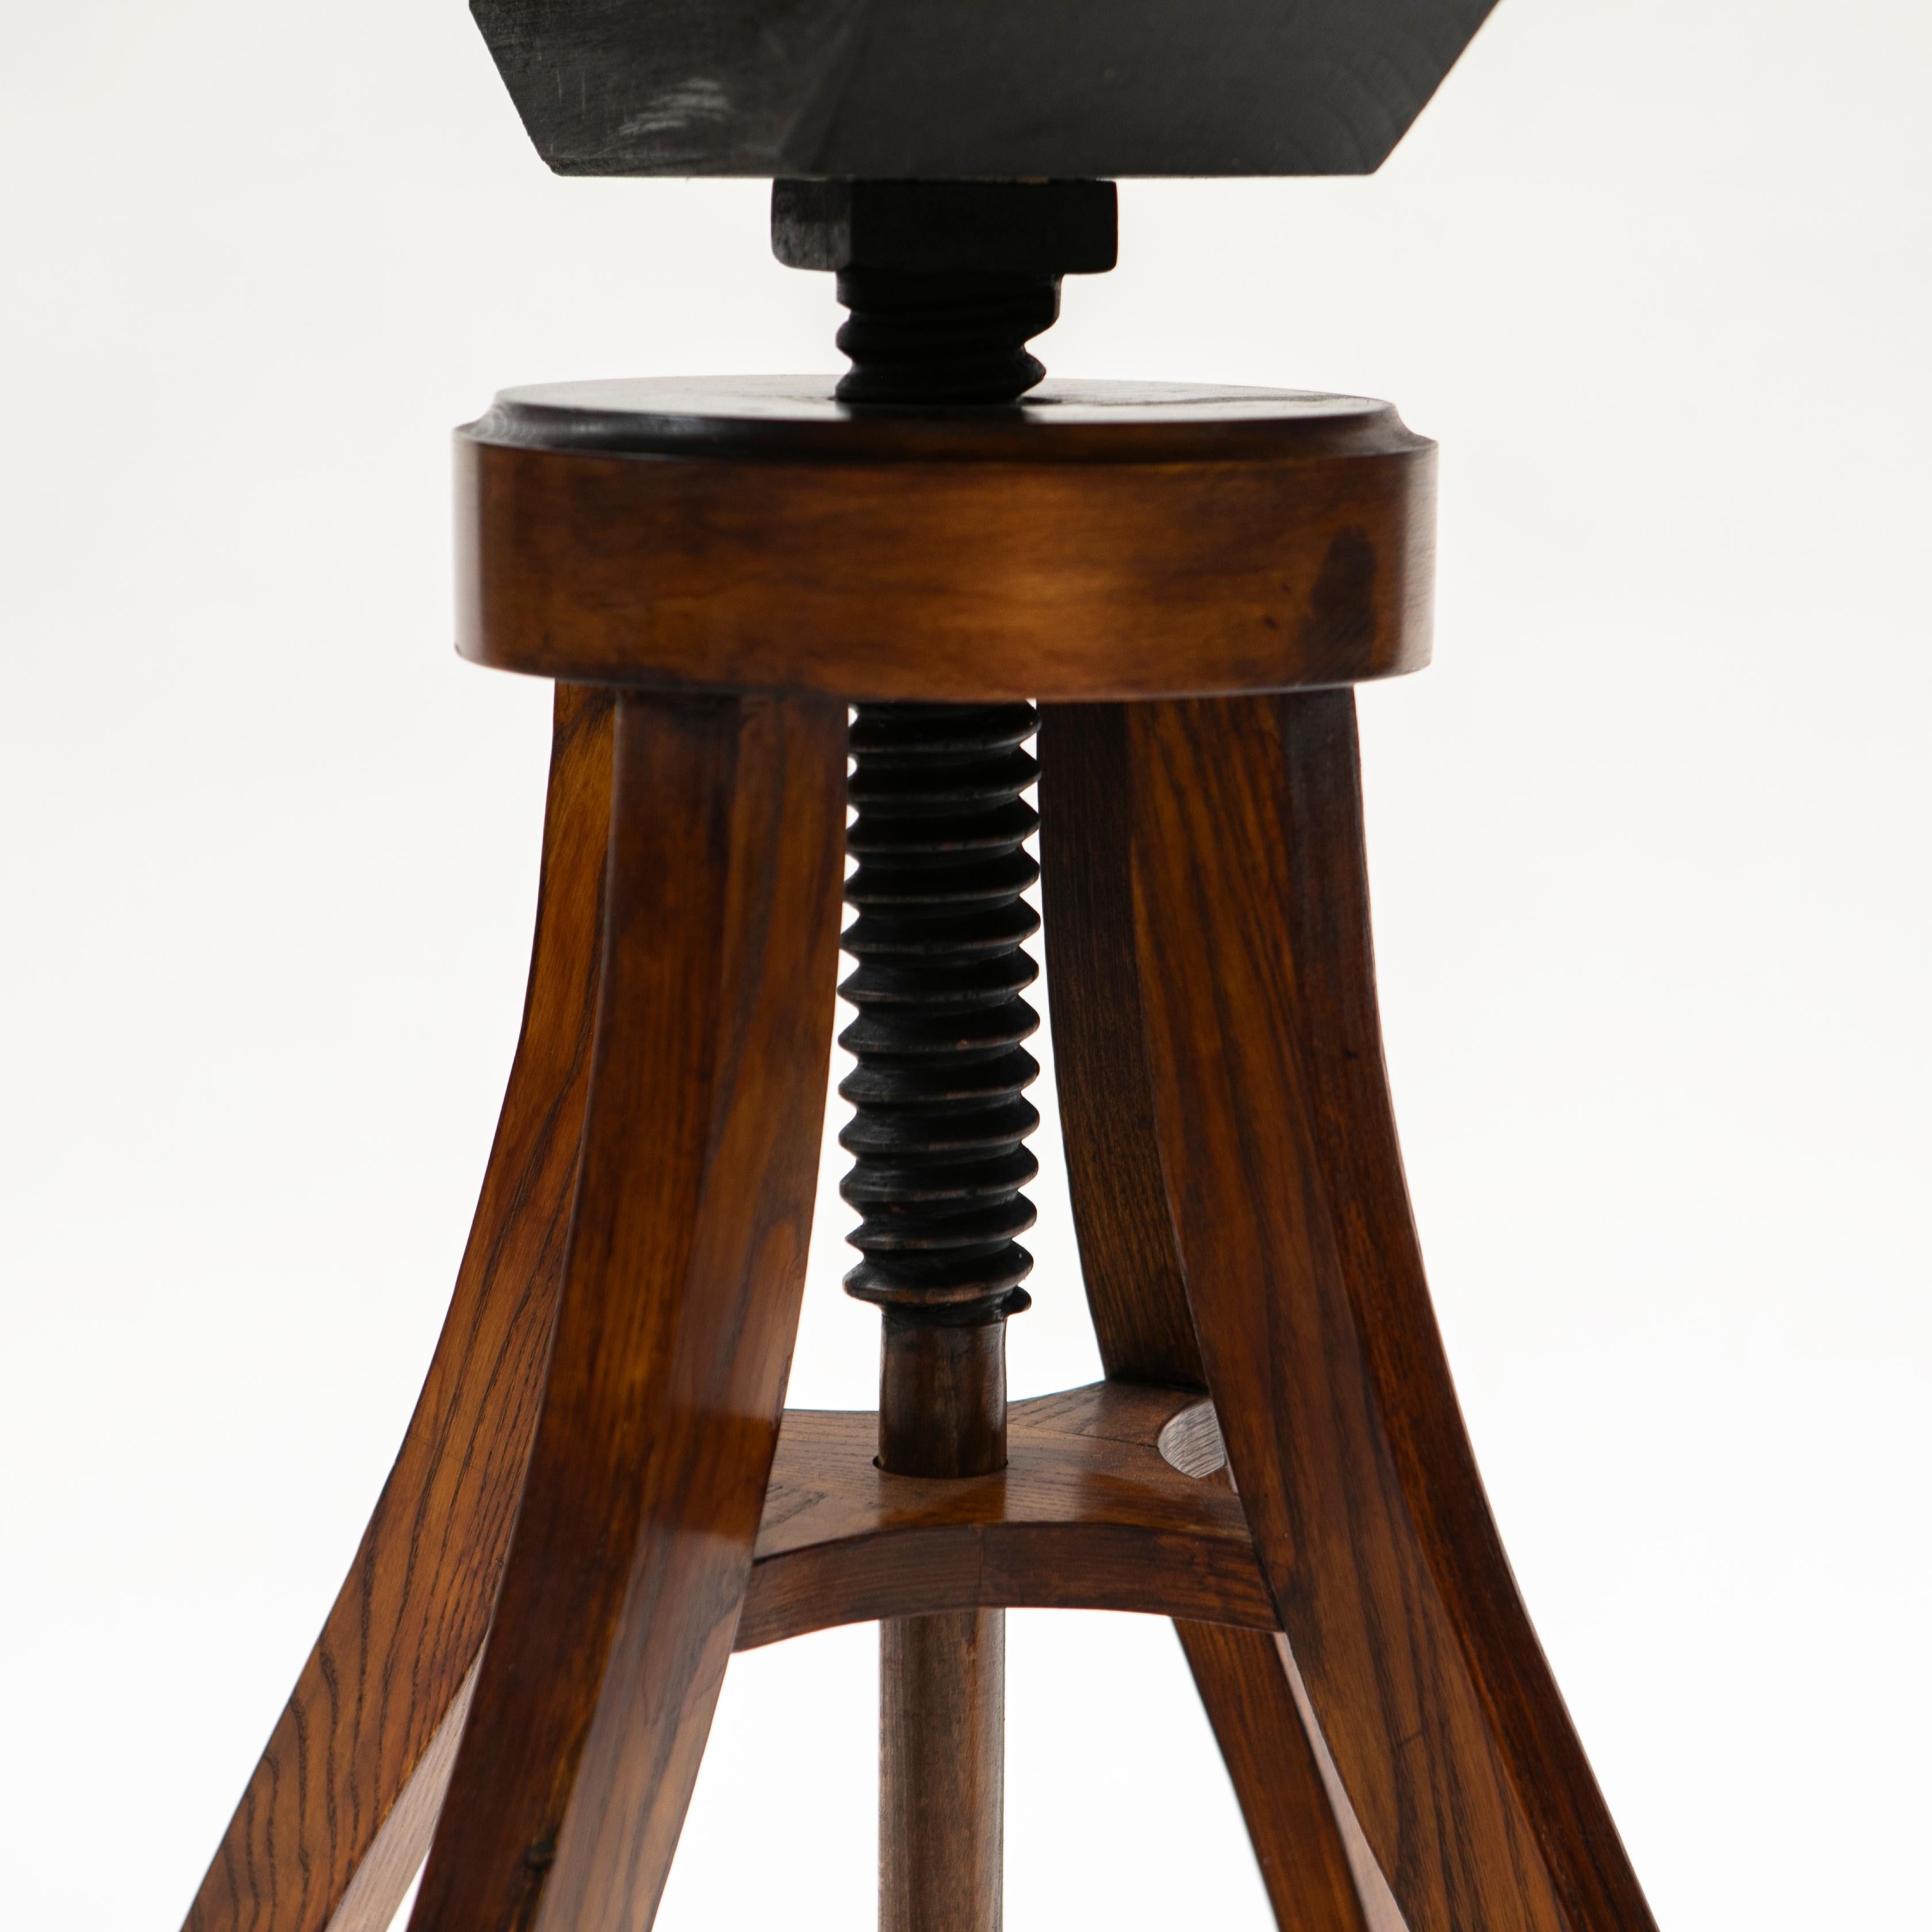 Set of 4 adjustable Bar Stools In Oak & Leather - Fritz Hansen For Sale 2